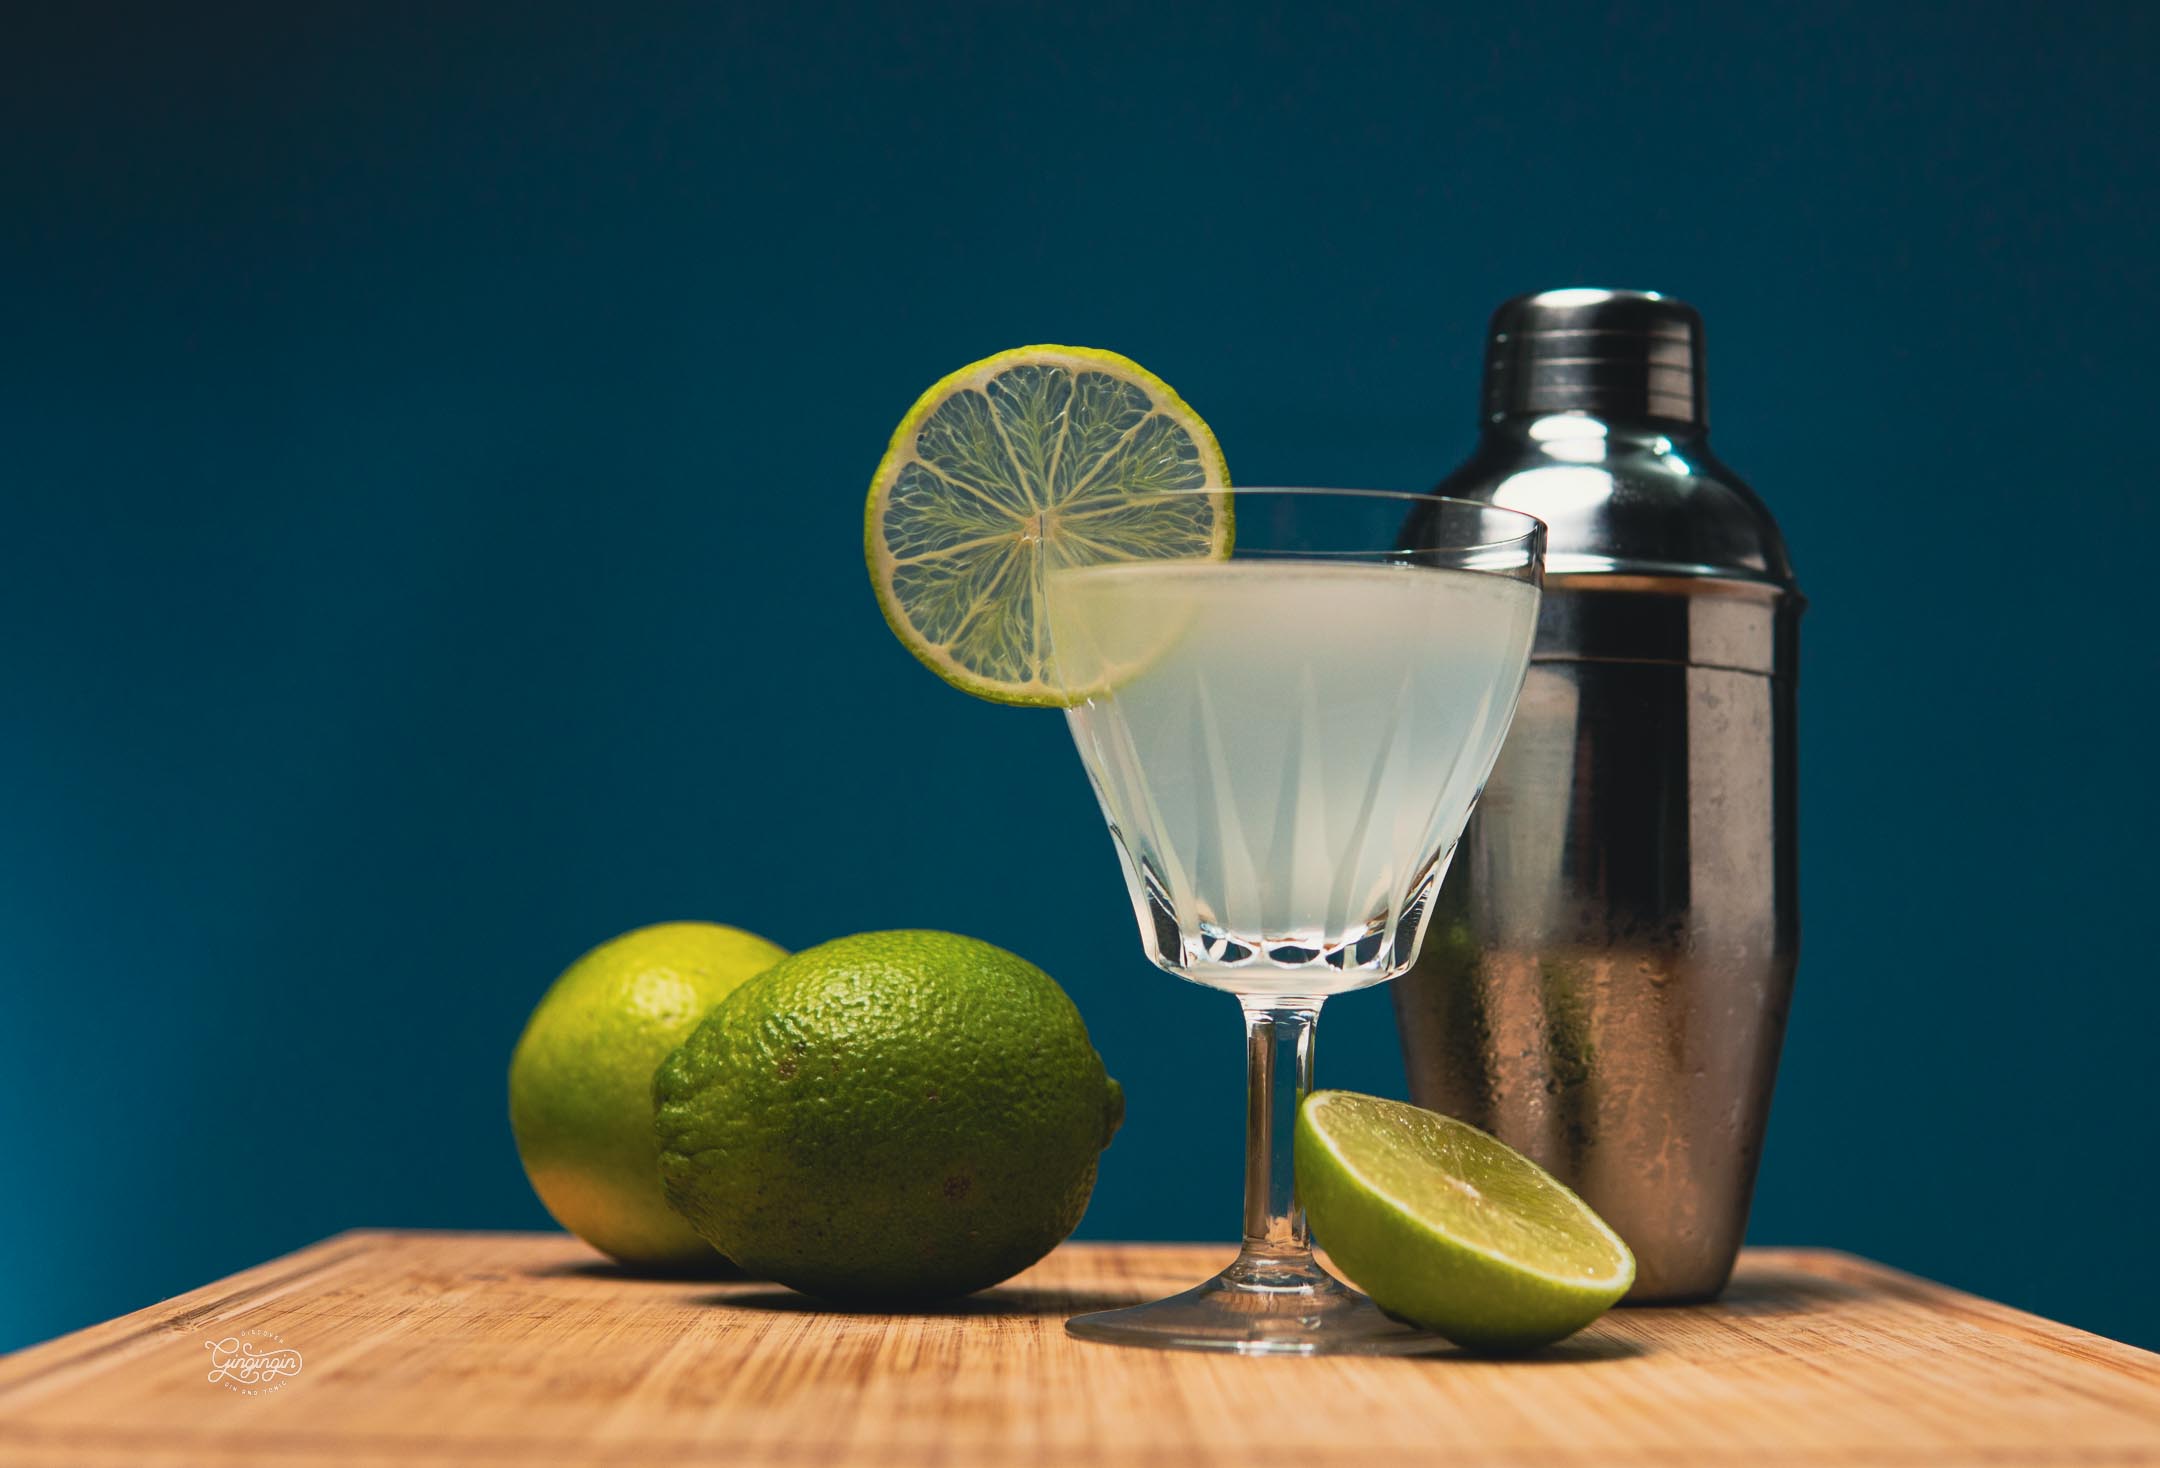 Gin-Cocktail-Limette-Gimlett-Shaker-JAN01079.jpg